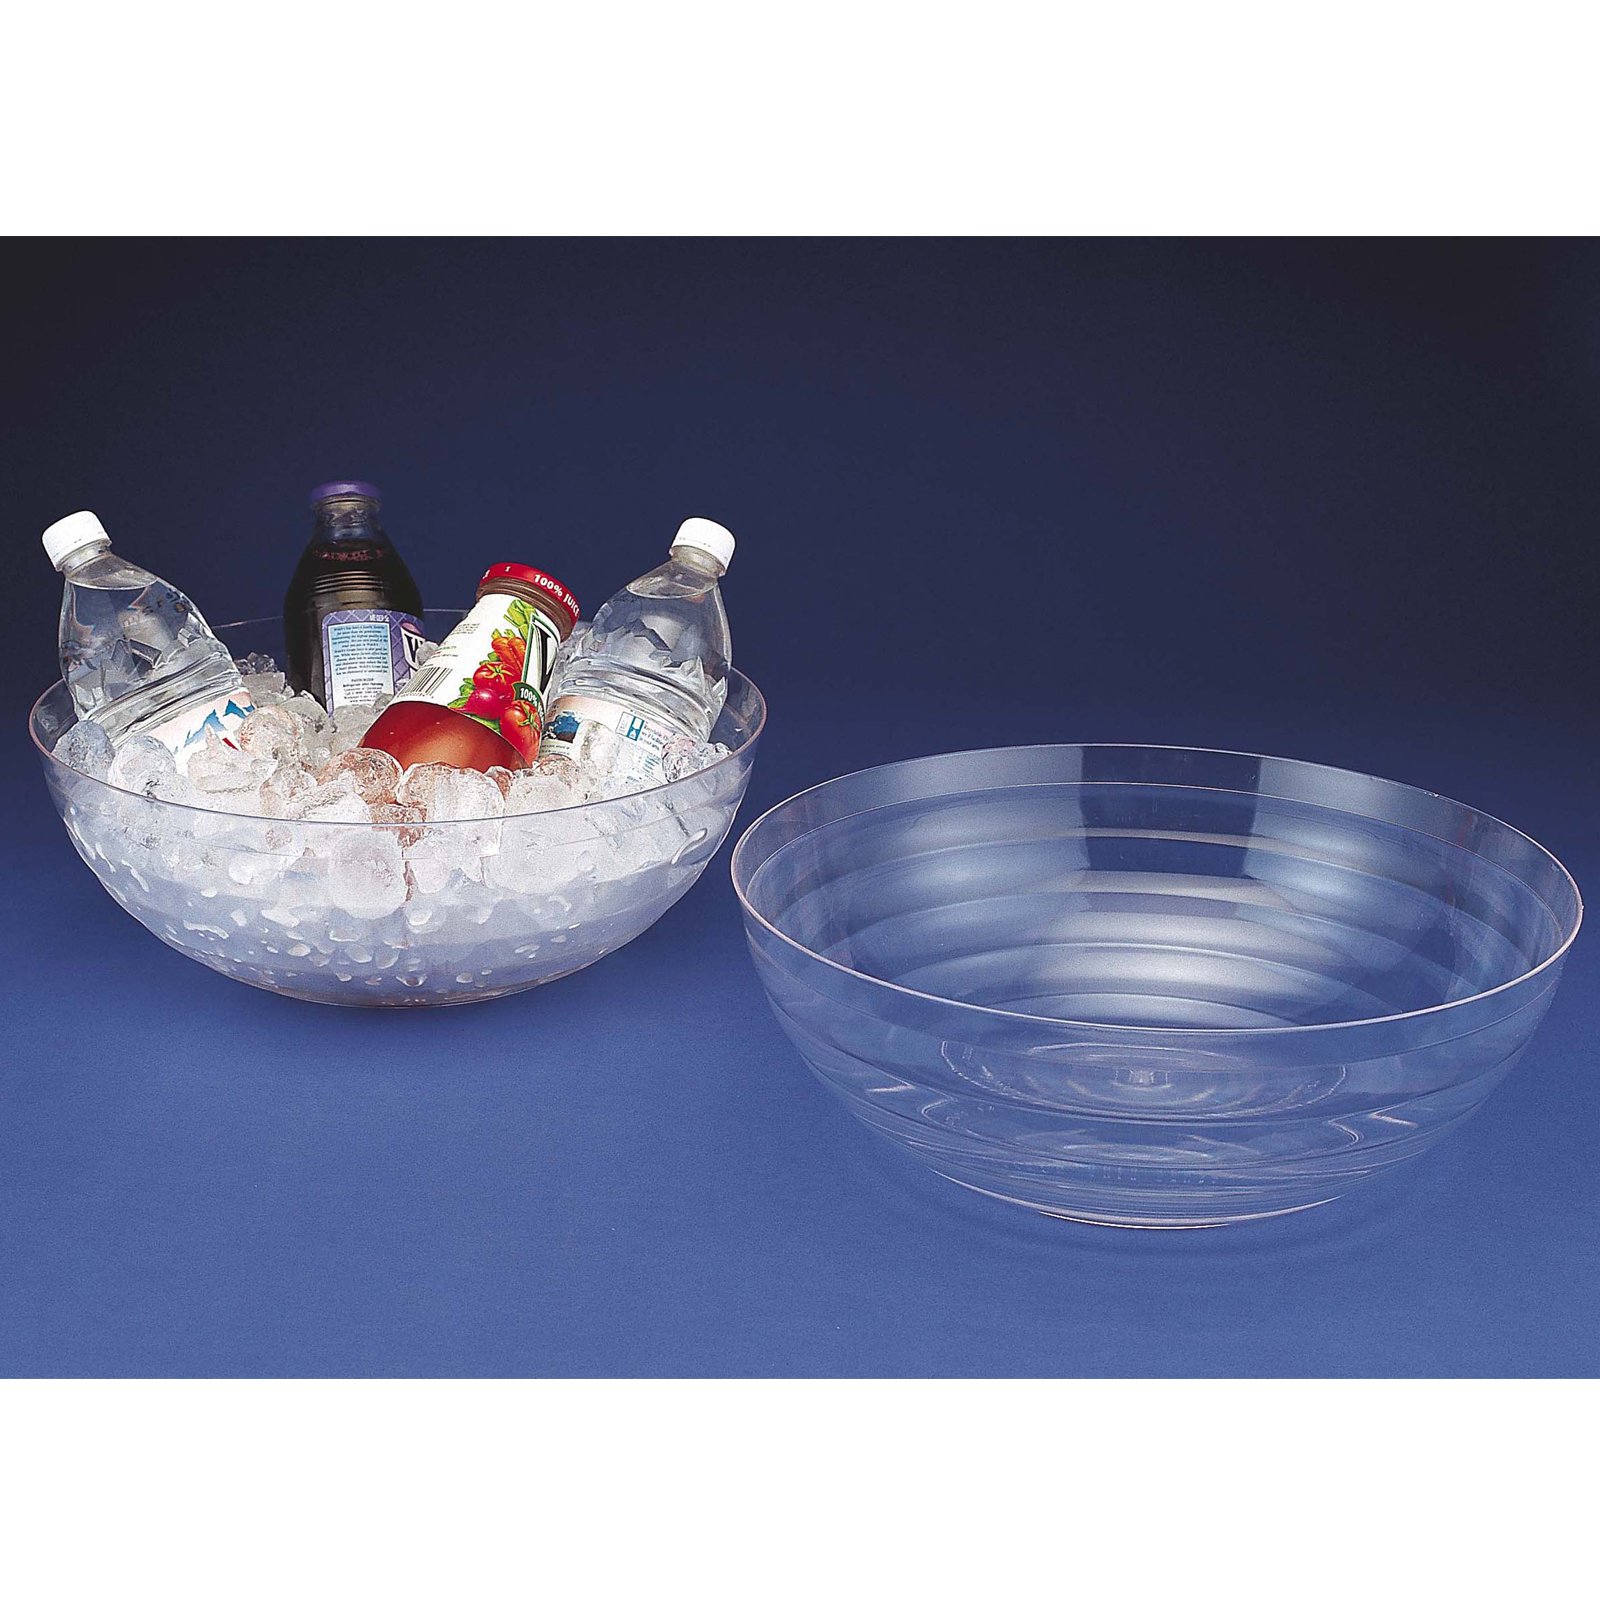 Ringed Large Plastic Bowl (10 Quart)